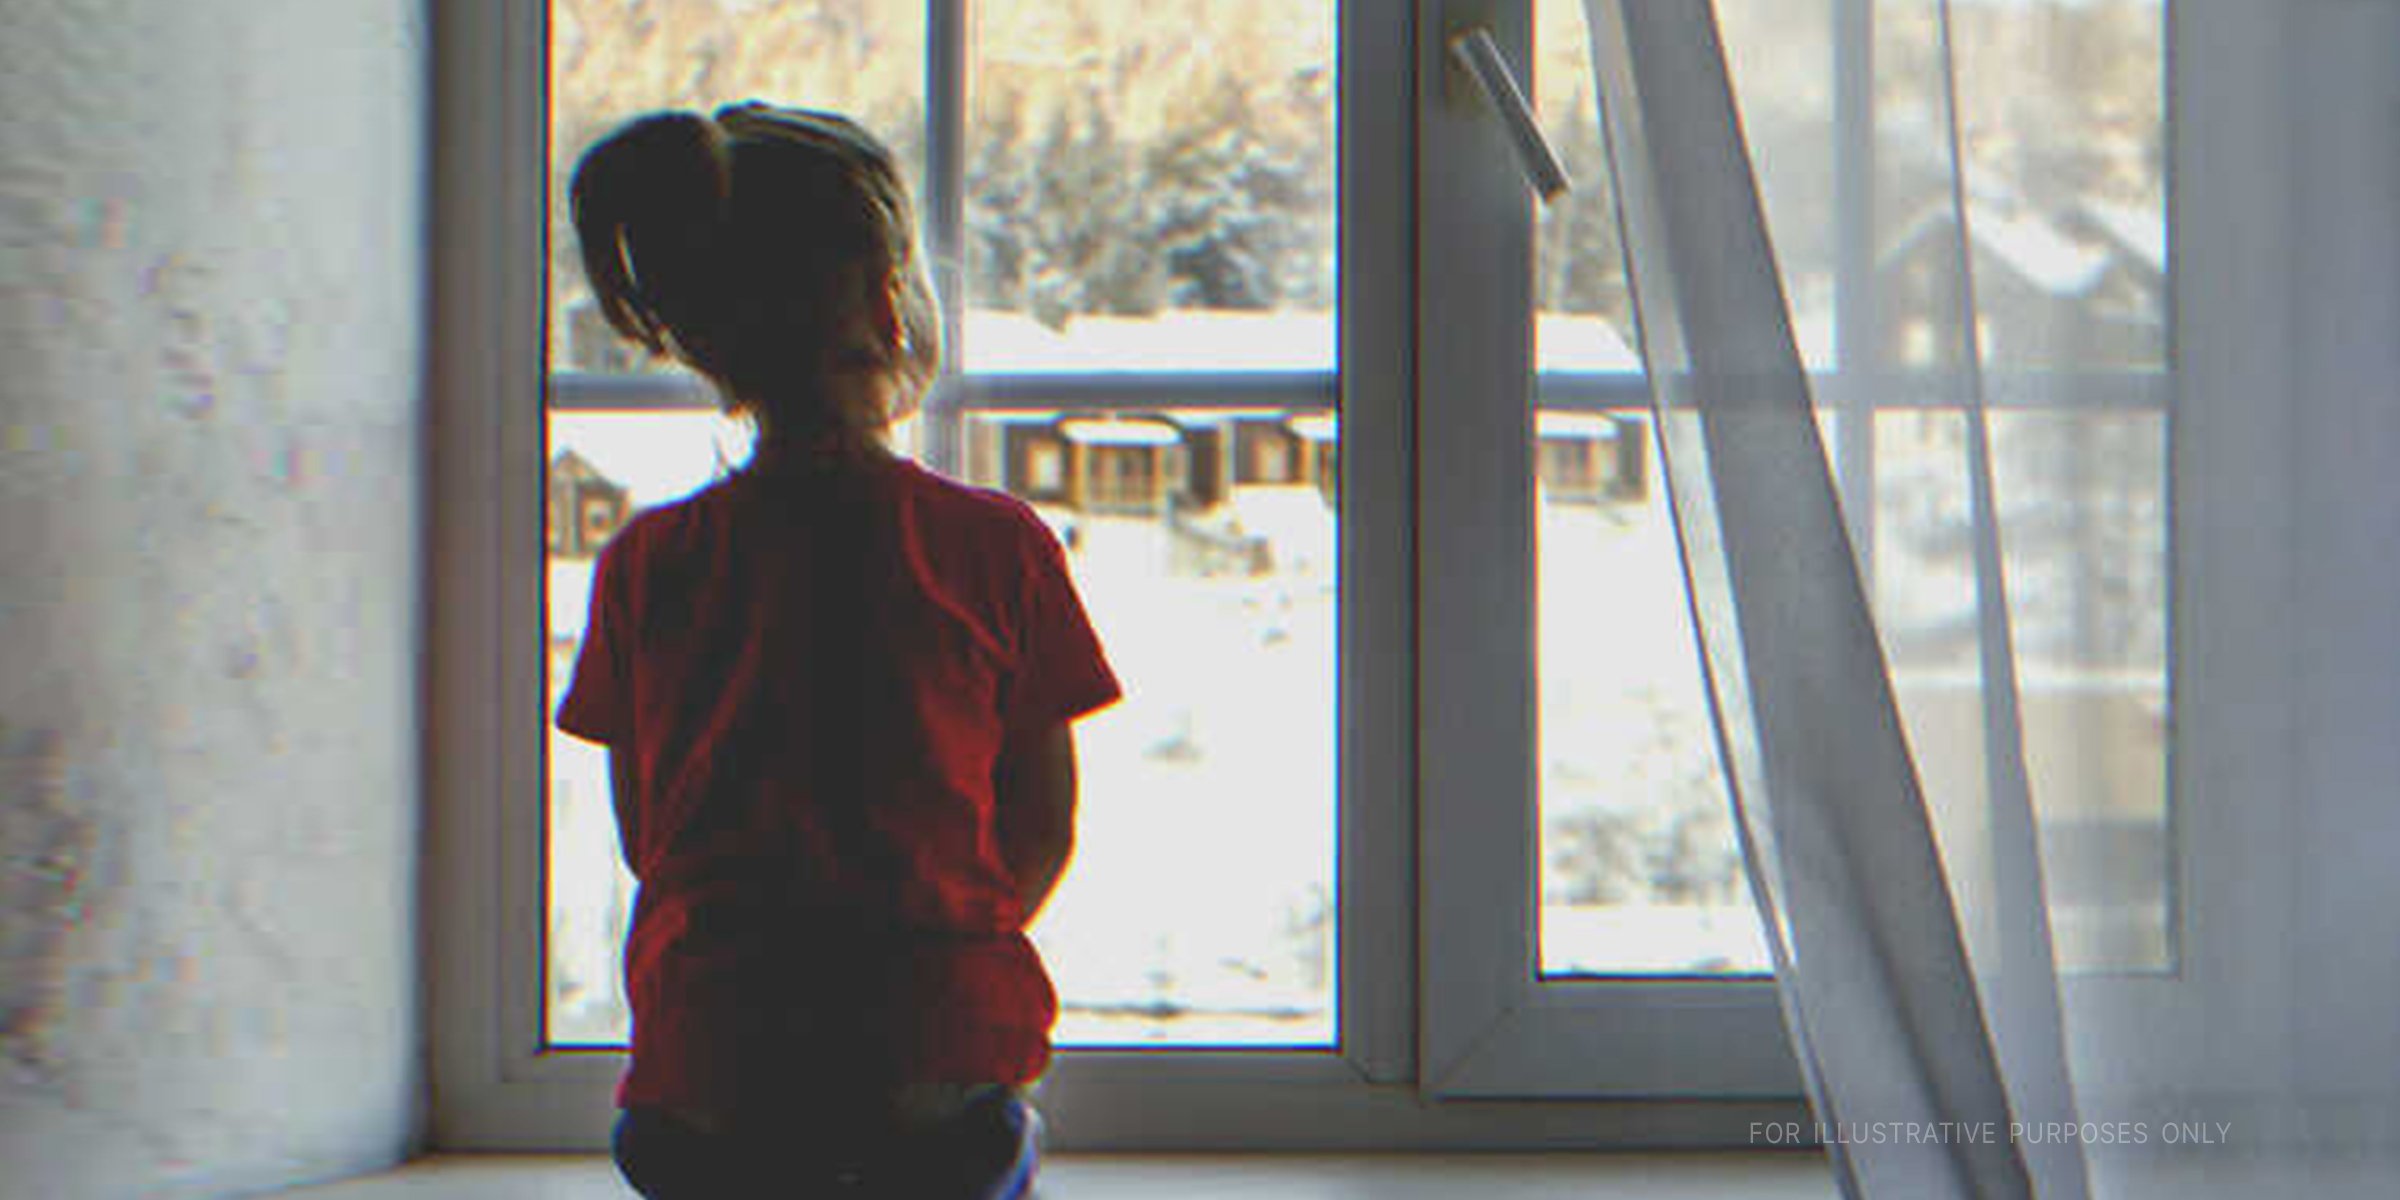 Ein Mädchen, das aus einem Fenster starrt. | Quelle: Shutterstock